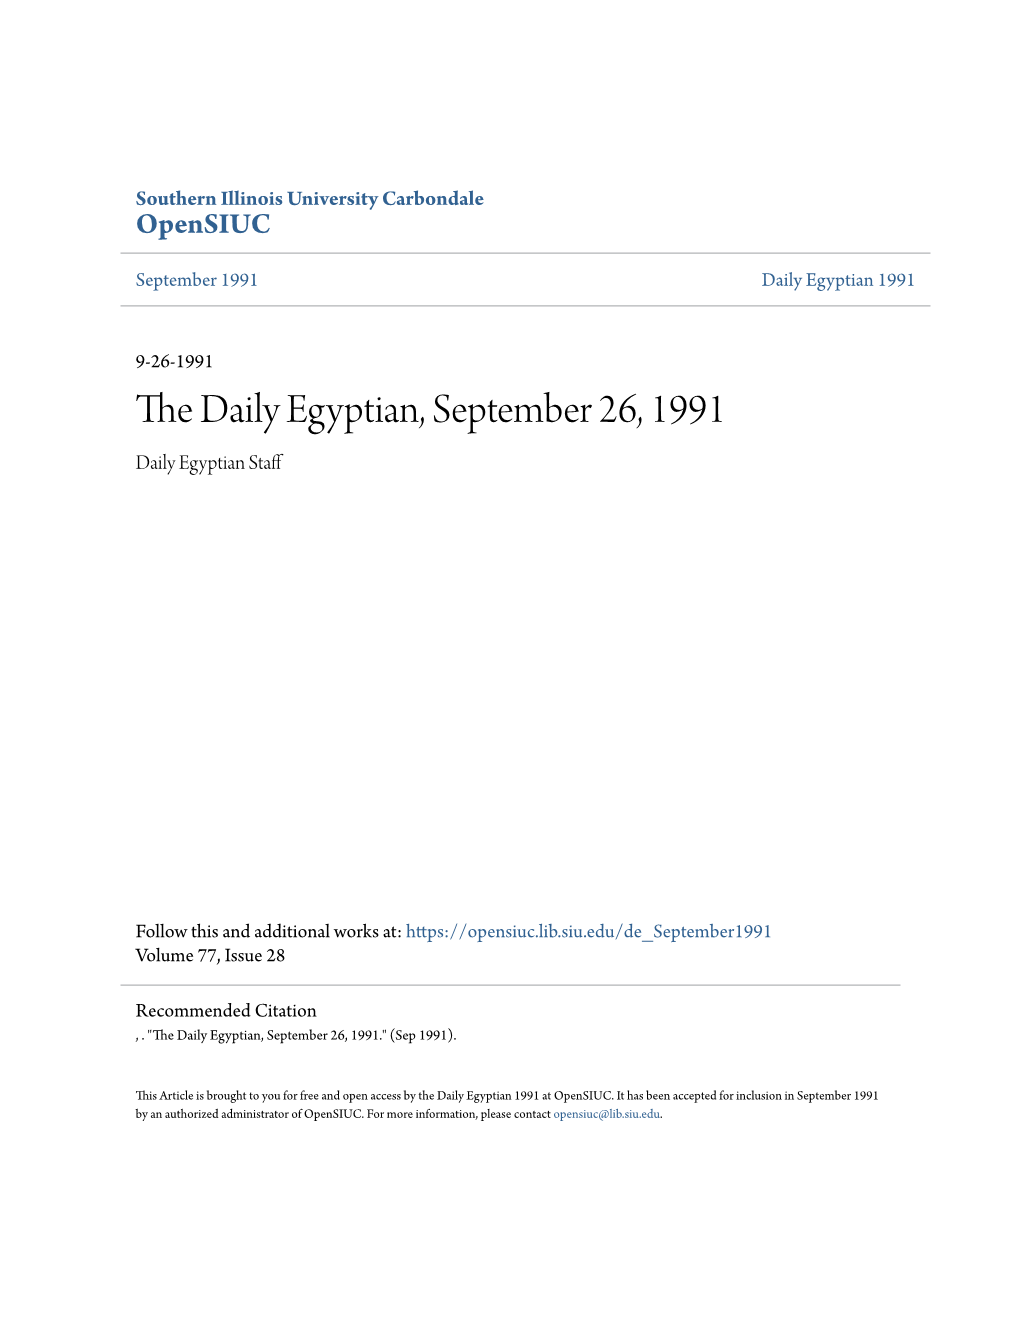 The Daily Egyptian, September 26, 1991